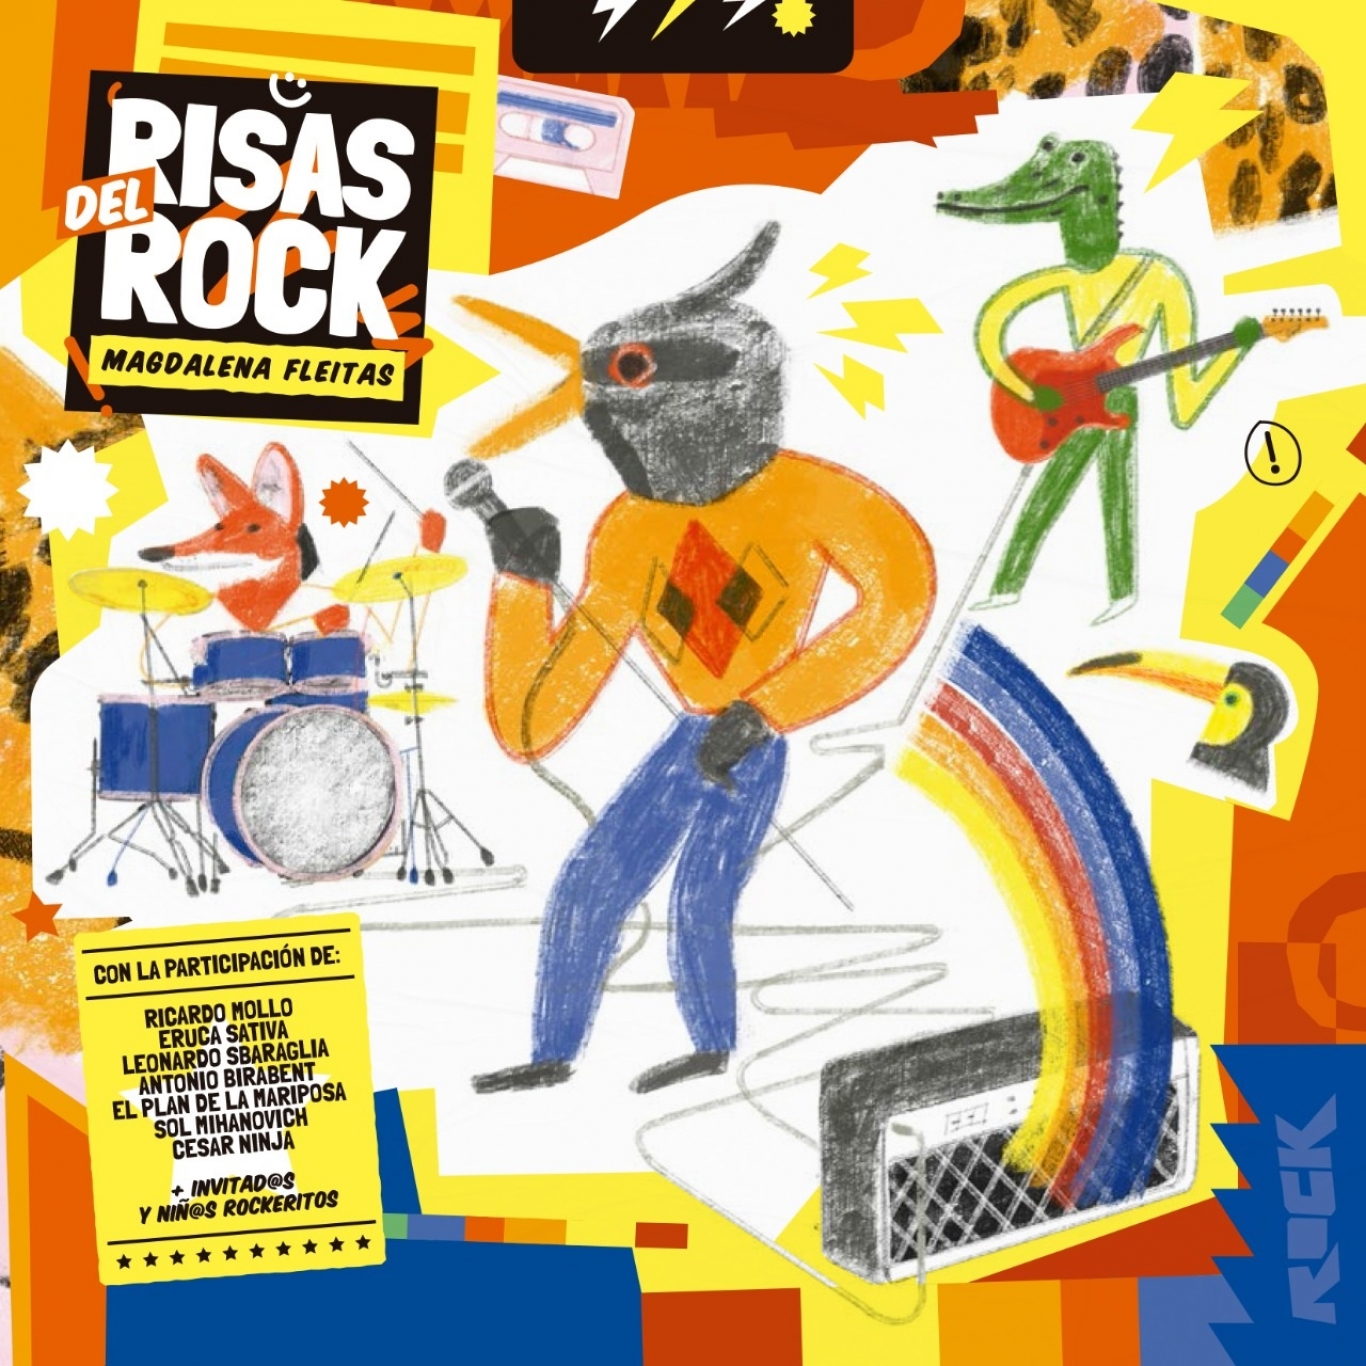 Magdalena Fleitas presentará su nuevo disco "Risas de rock" el 27 de julio